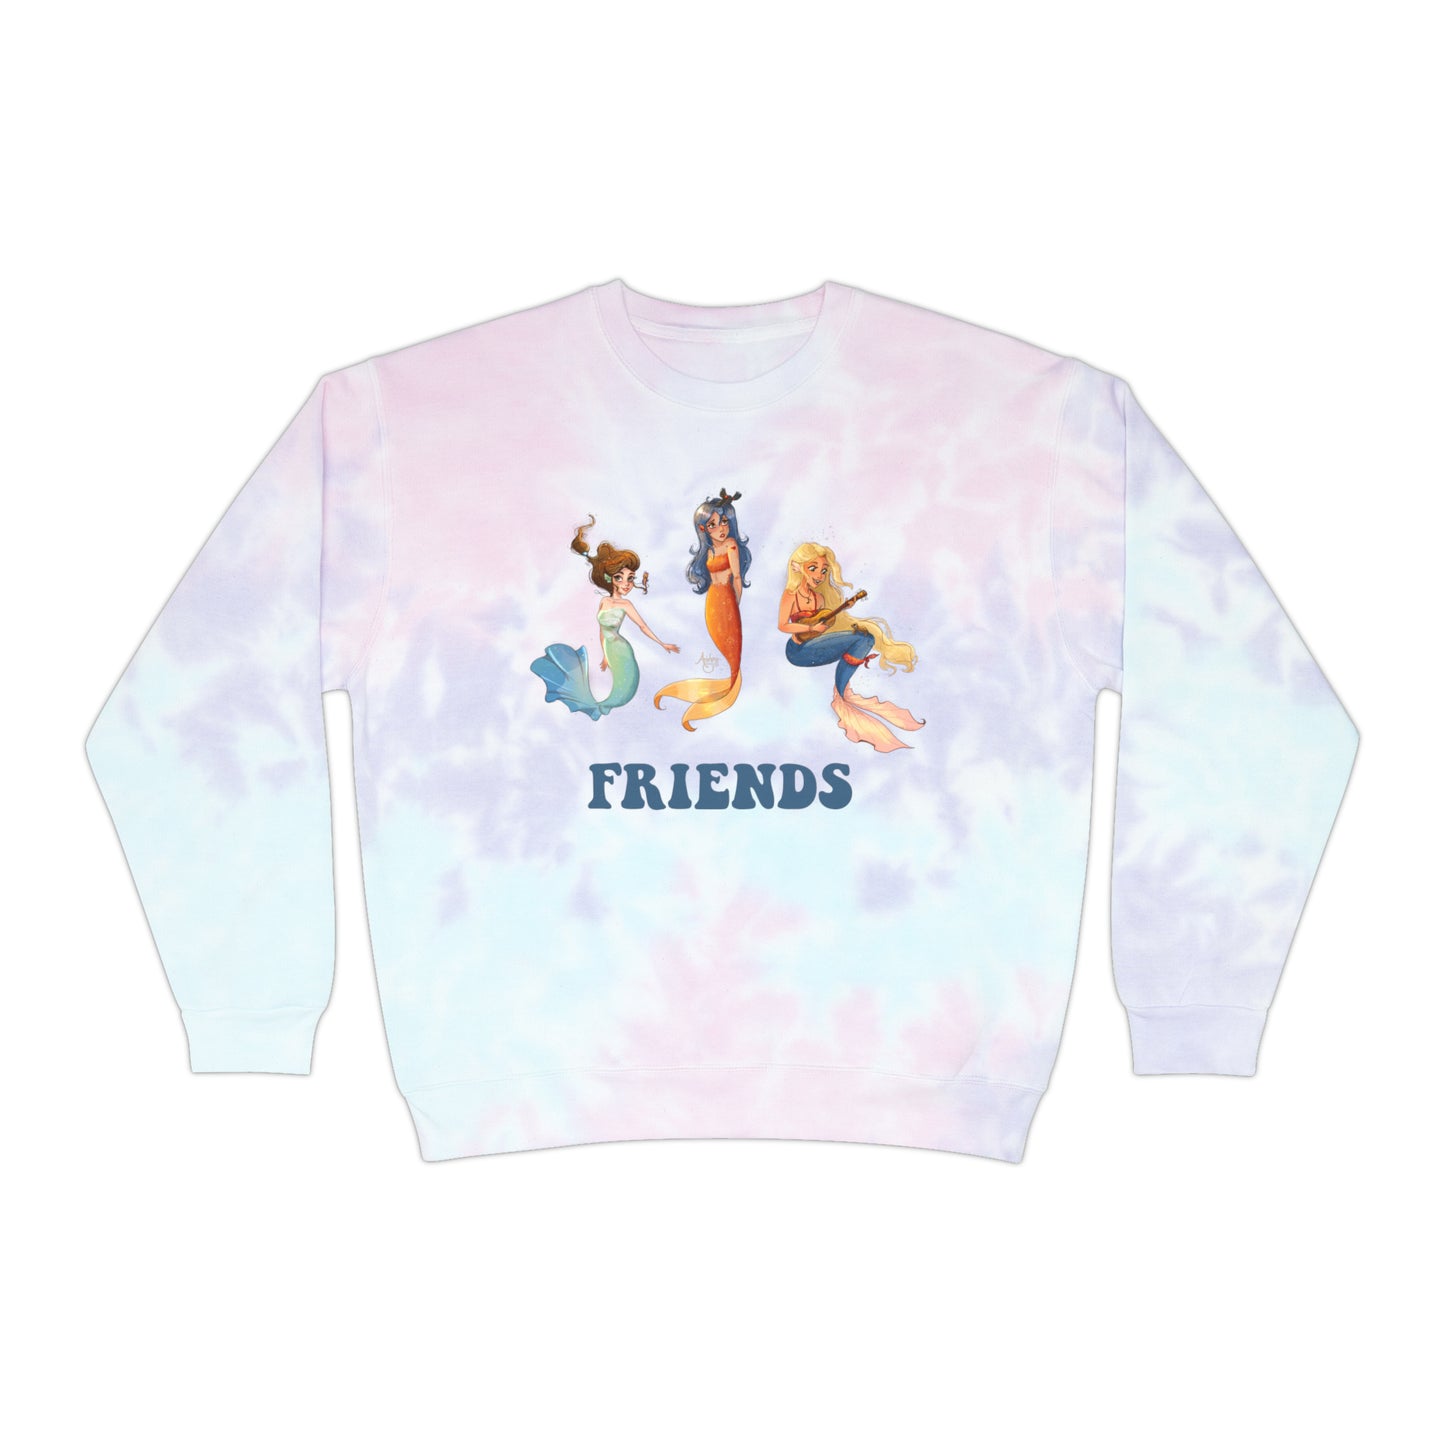 Mermaid Friends Tie-Dye Sweatshirt Version 1